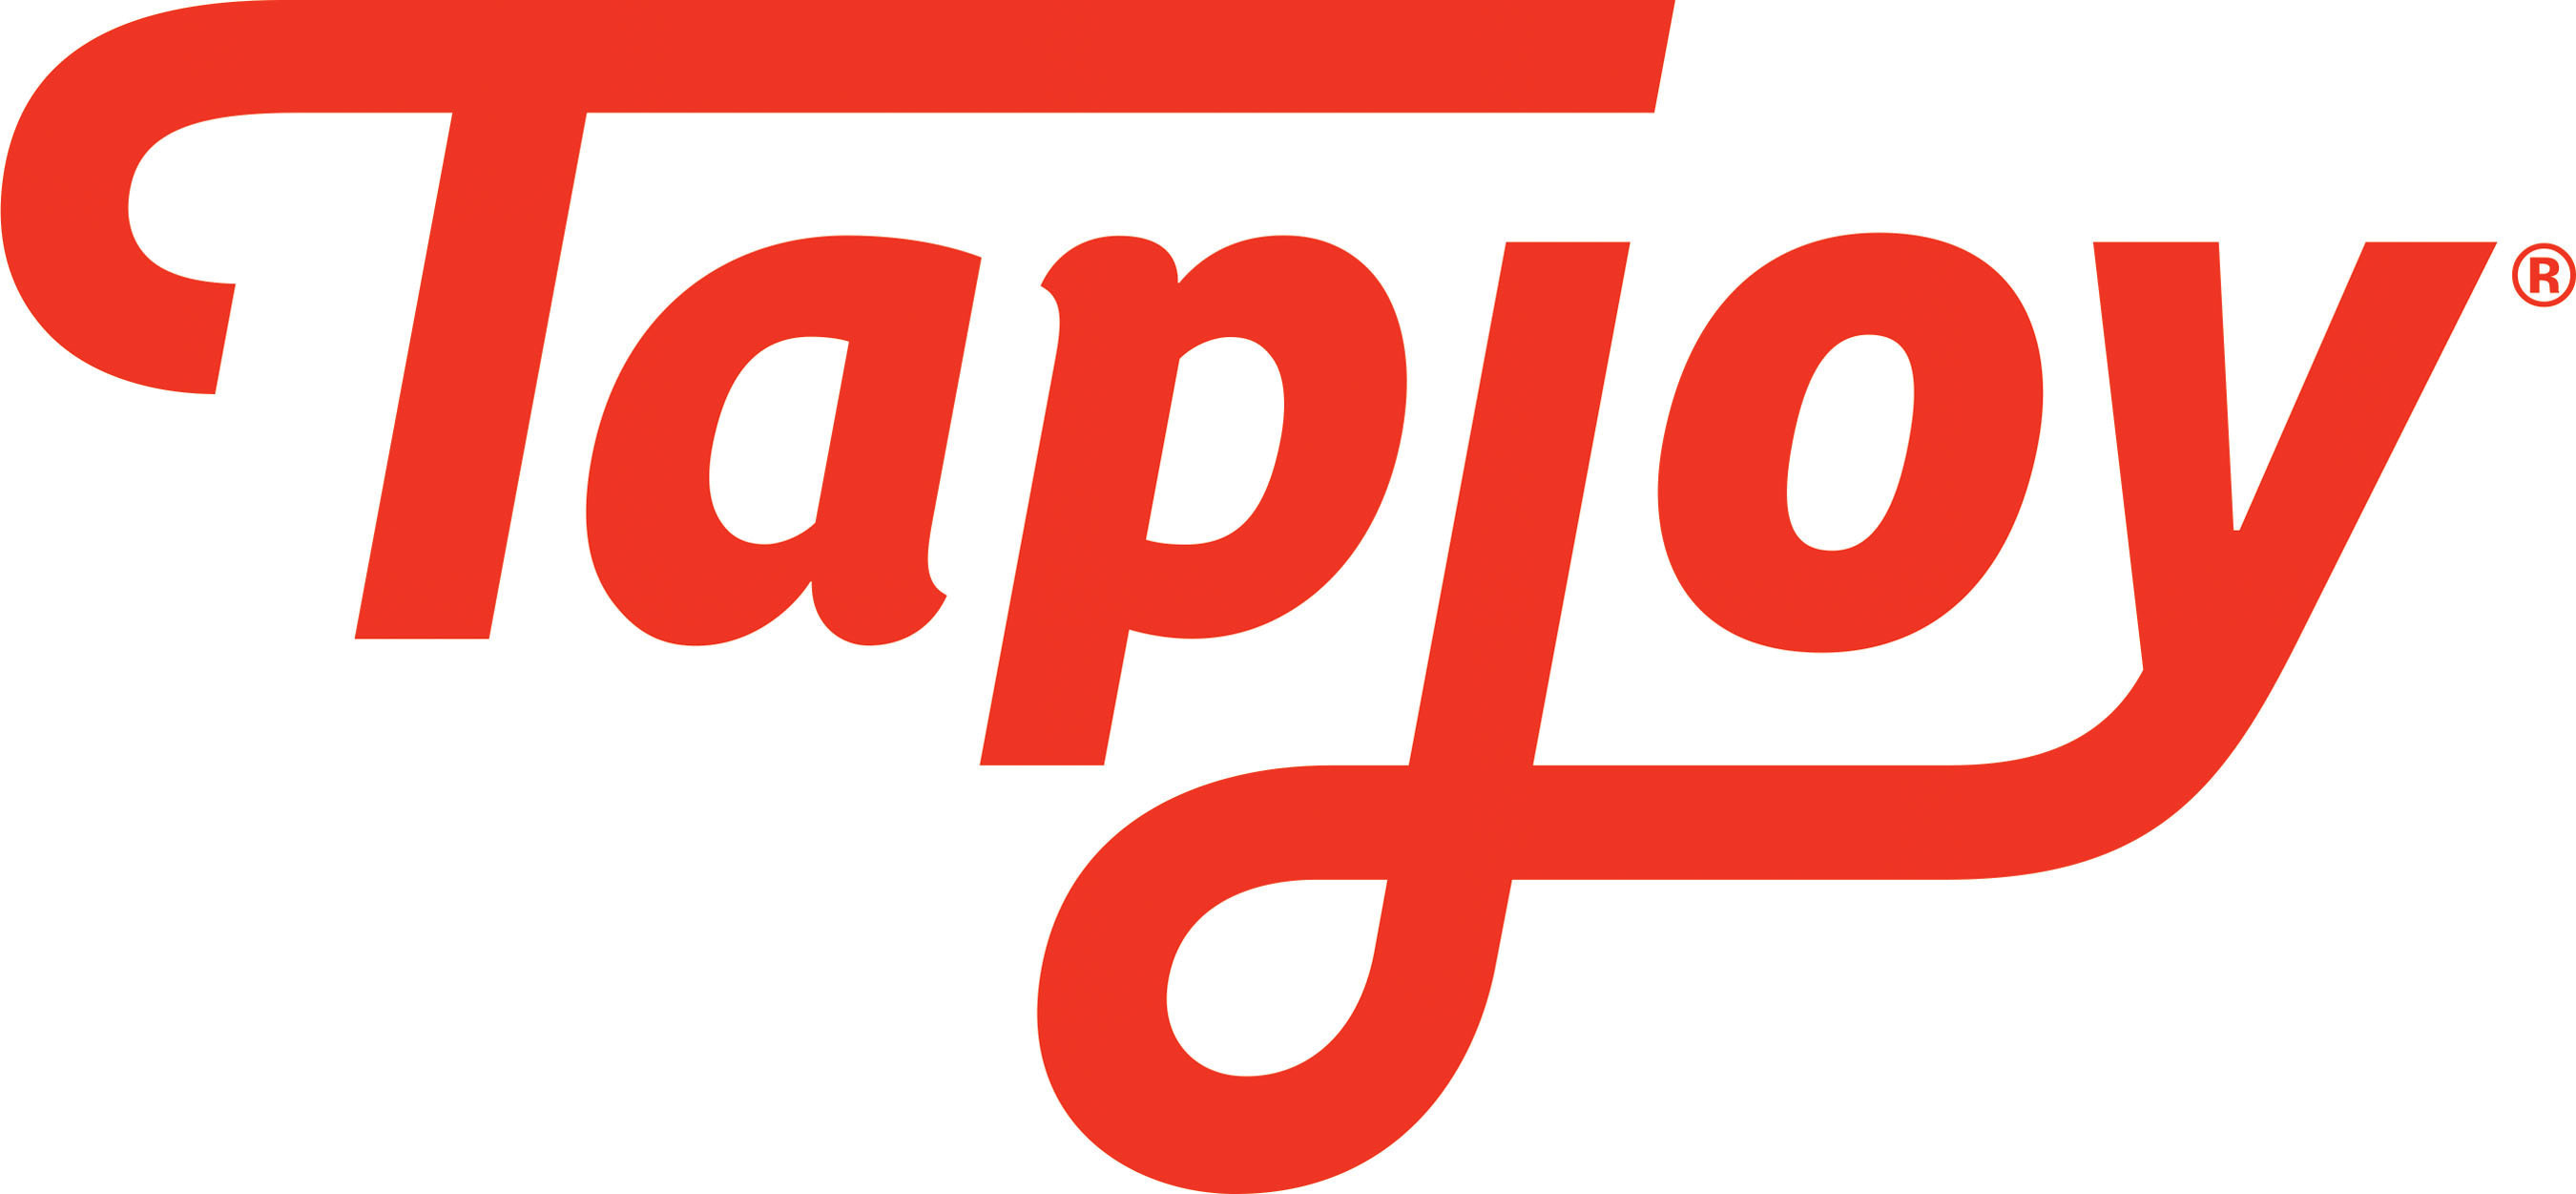 Tapjoy Inc. logo. (PRNewsFoto/Tapjoy, Inc.) (PRNewsFoto/)